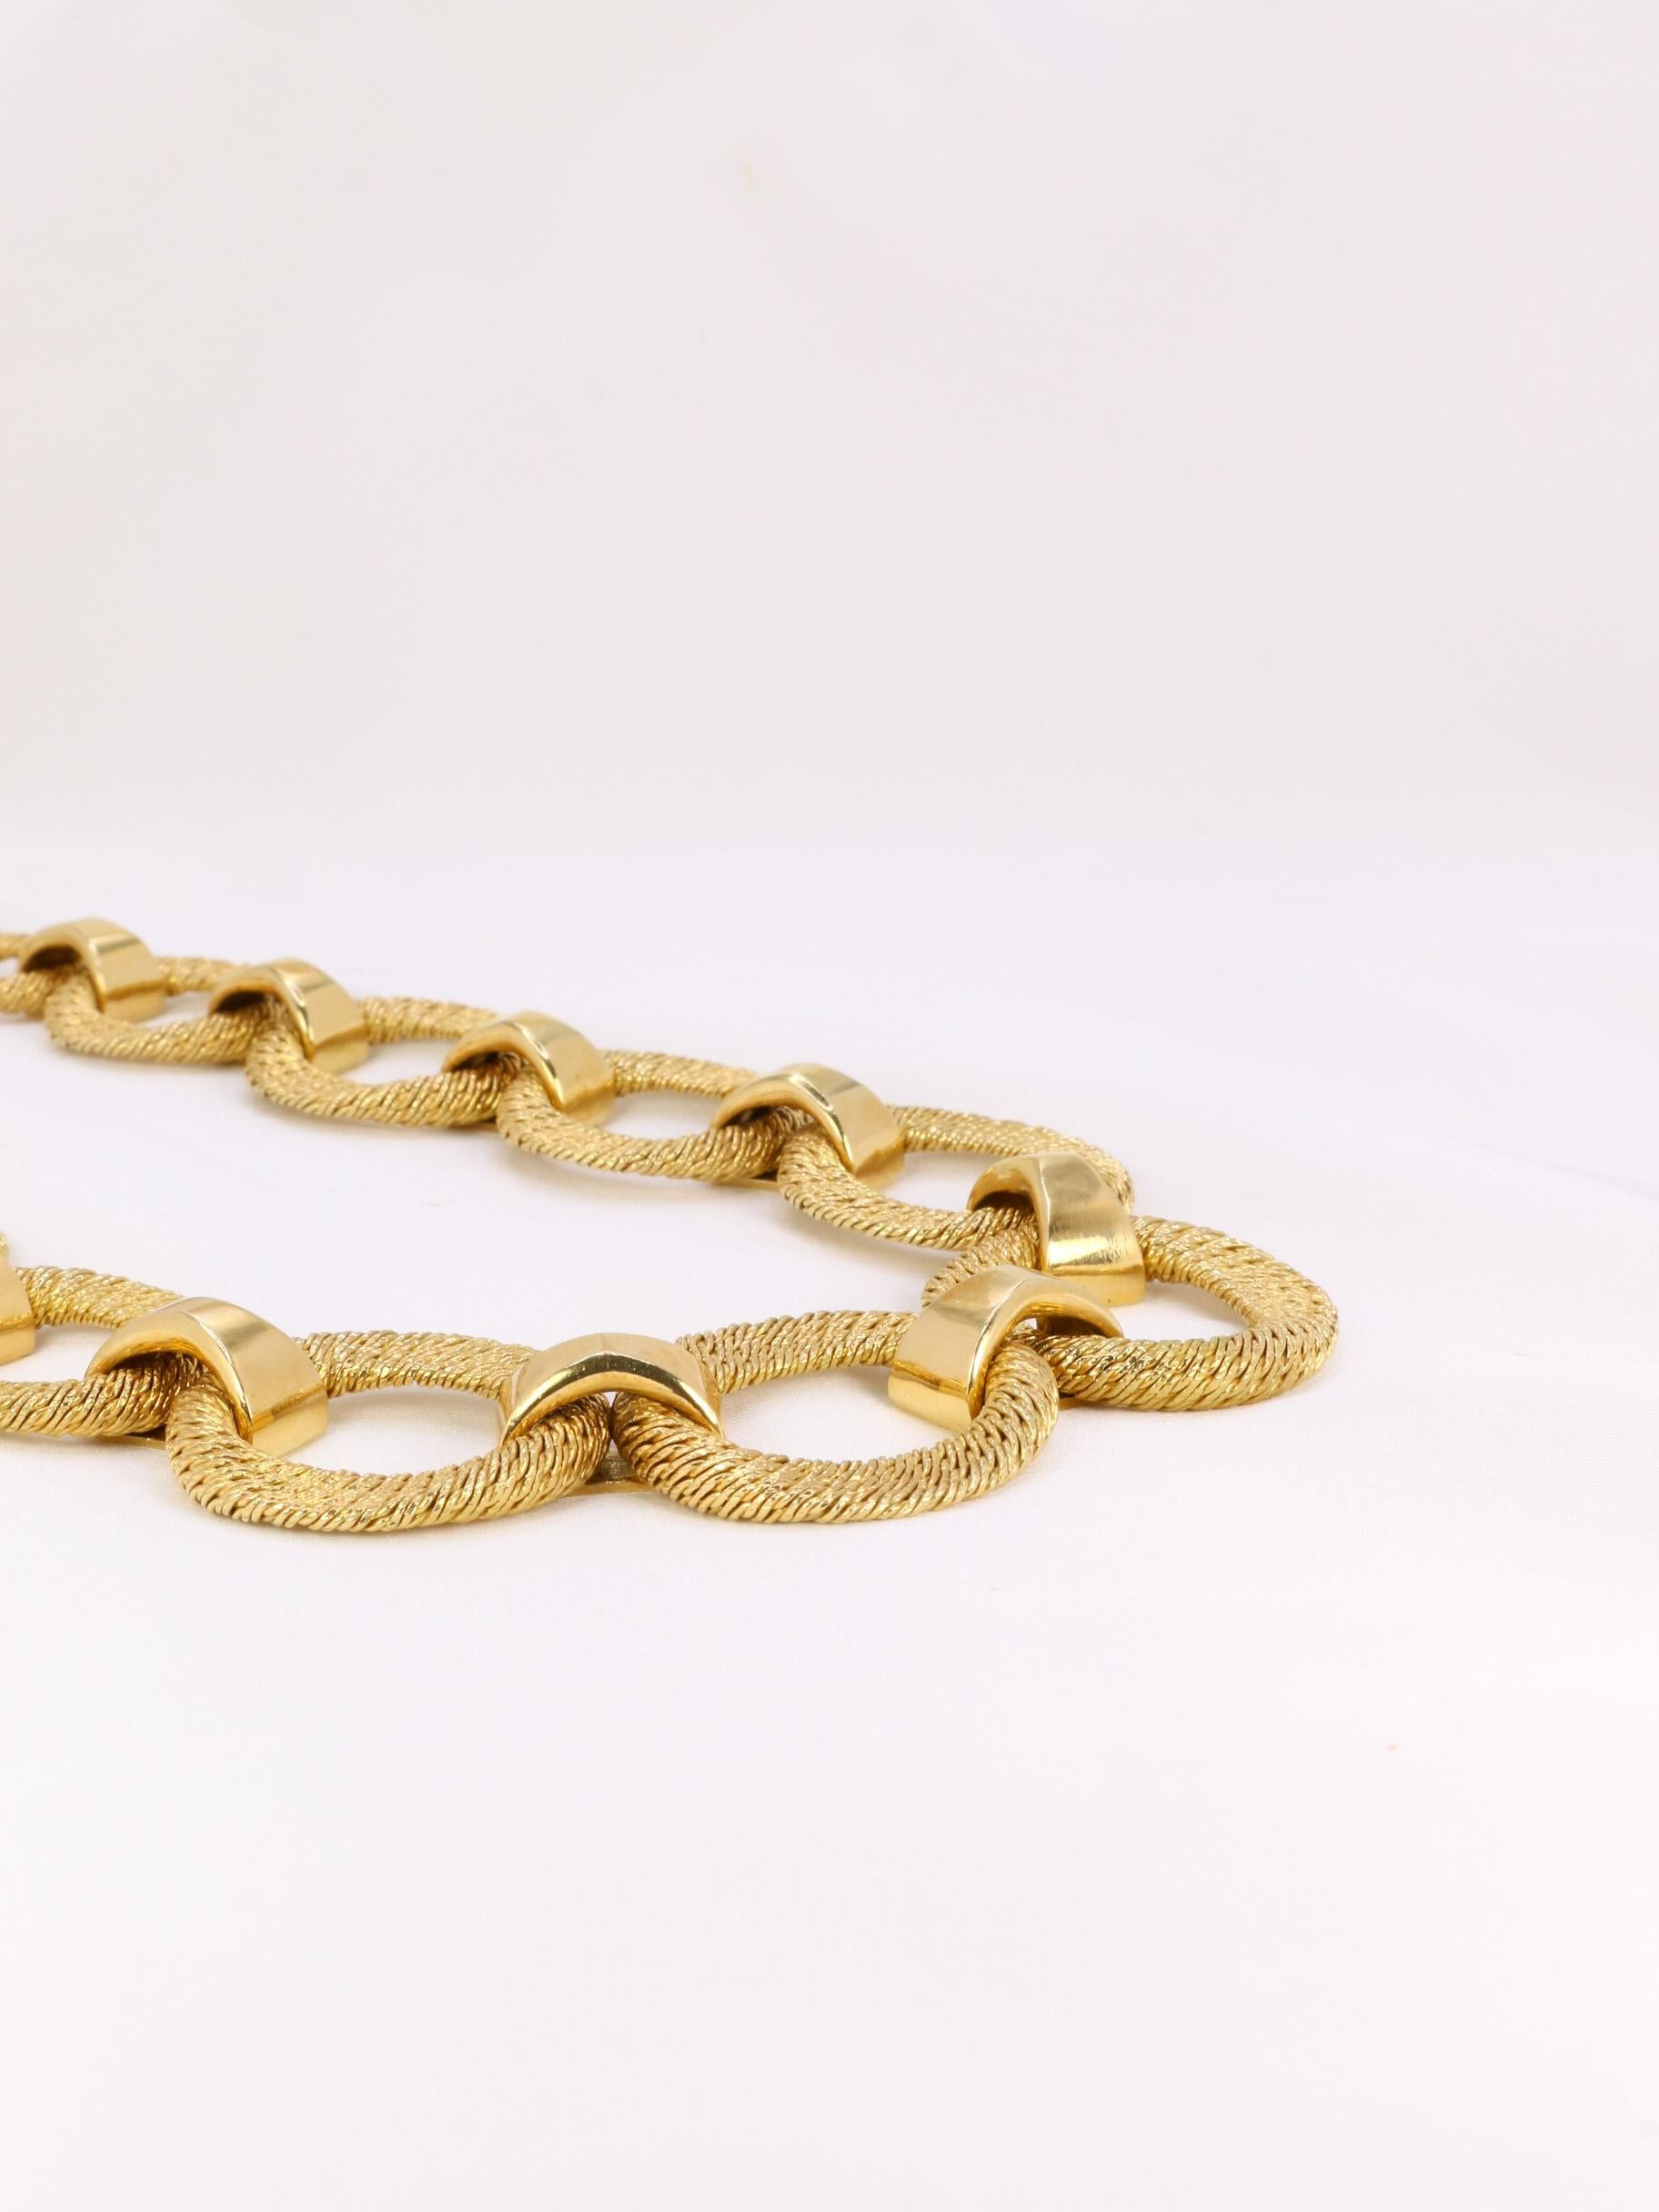 Women's Georges Lenfant vintage necklace, yellow gold paillette model